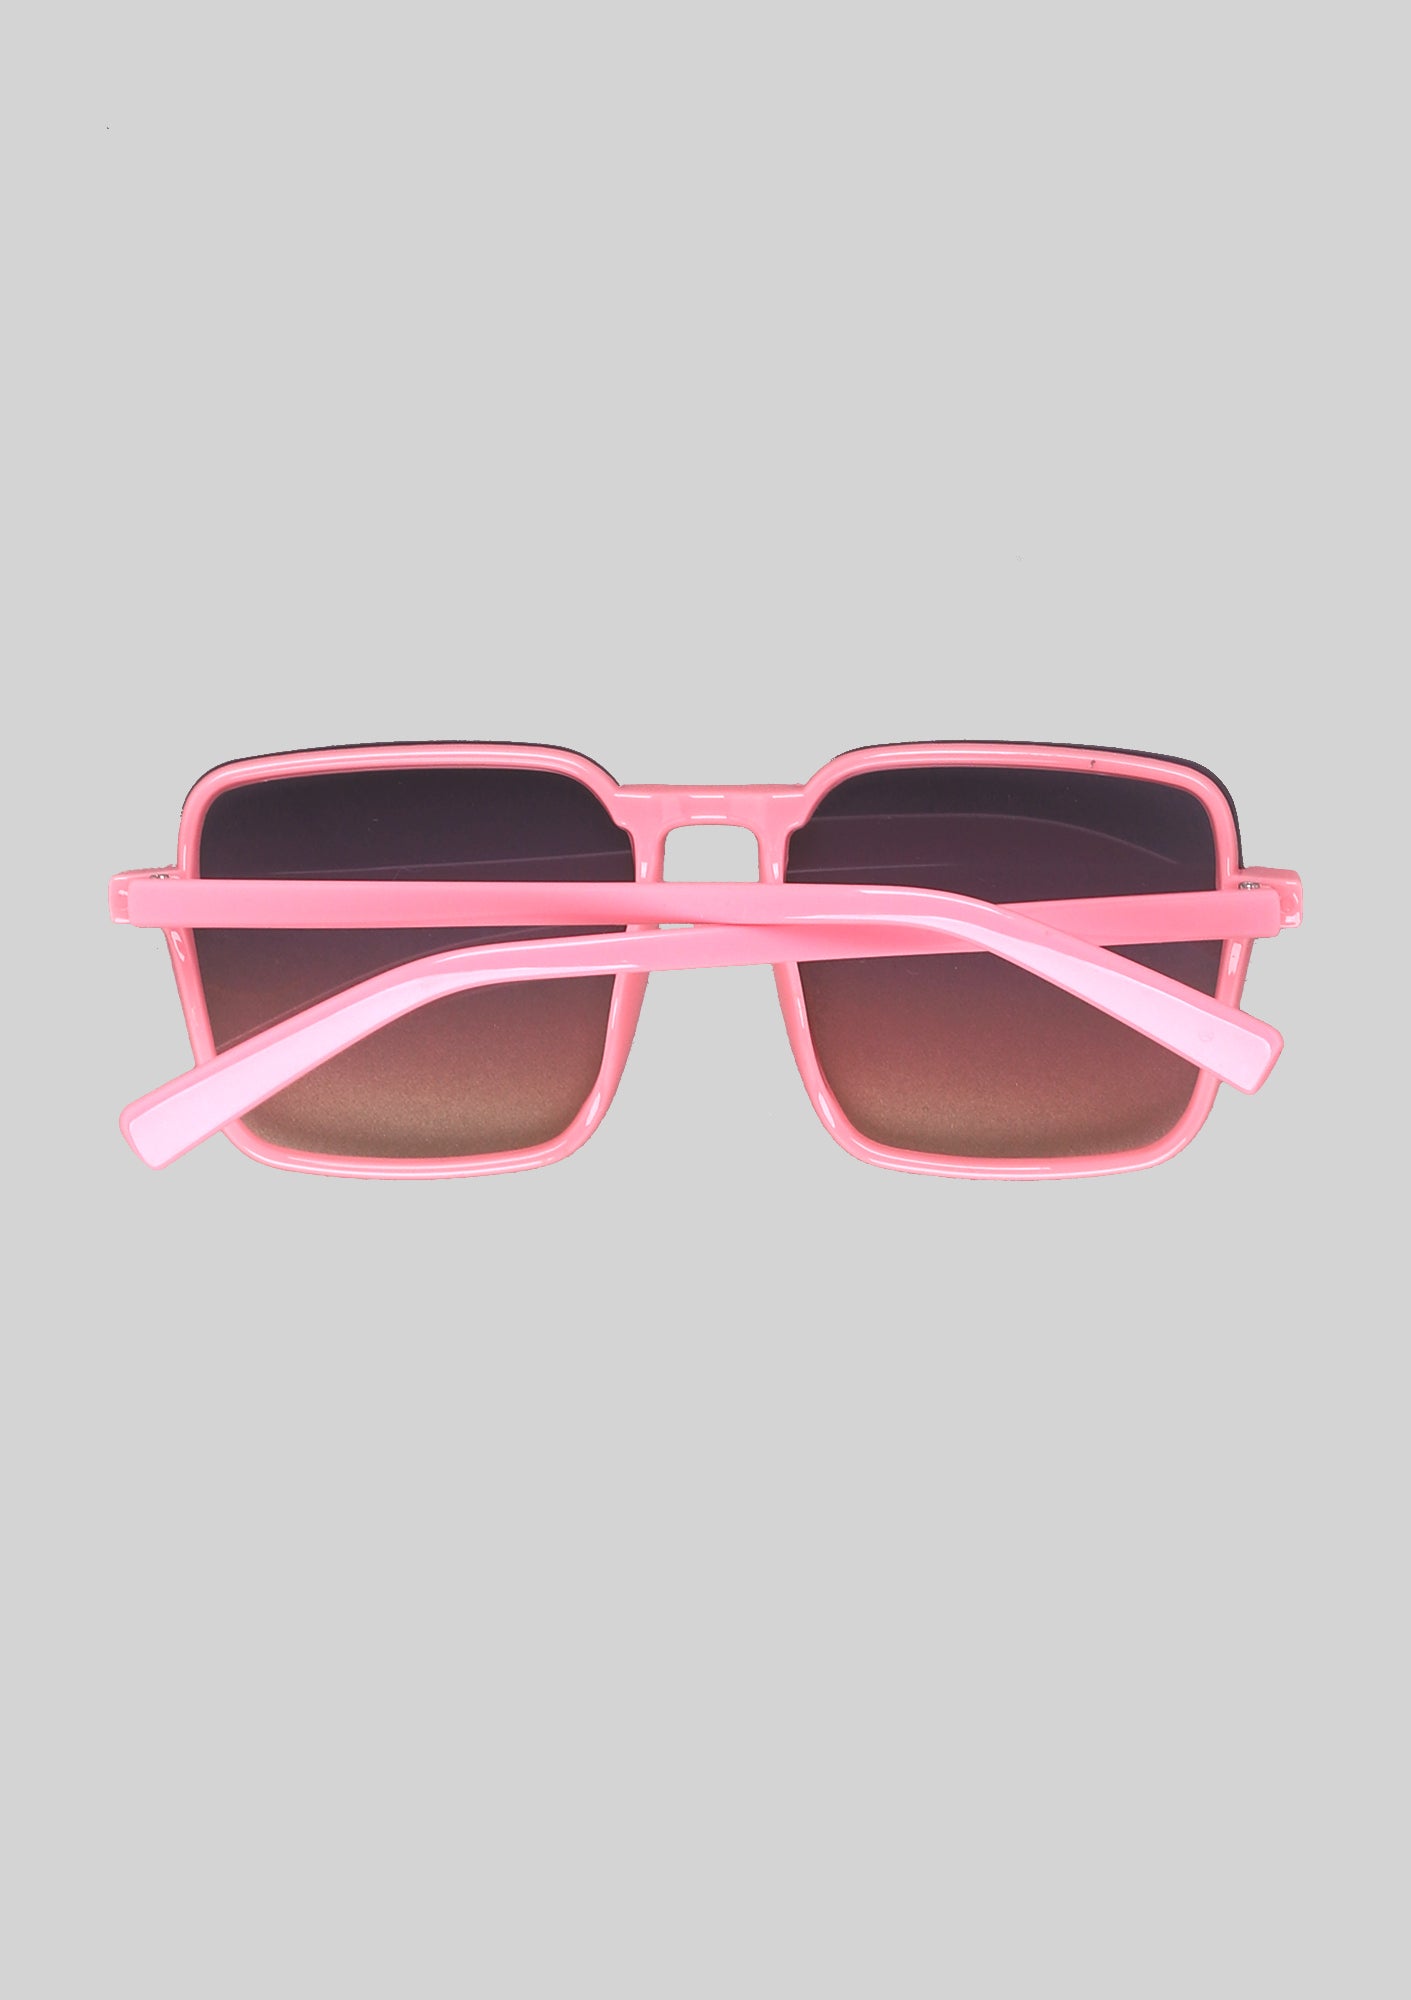 Rosey Squared Retro Sunglasses